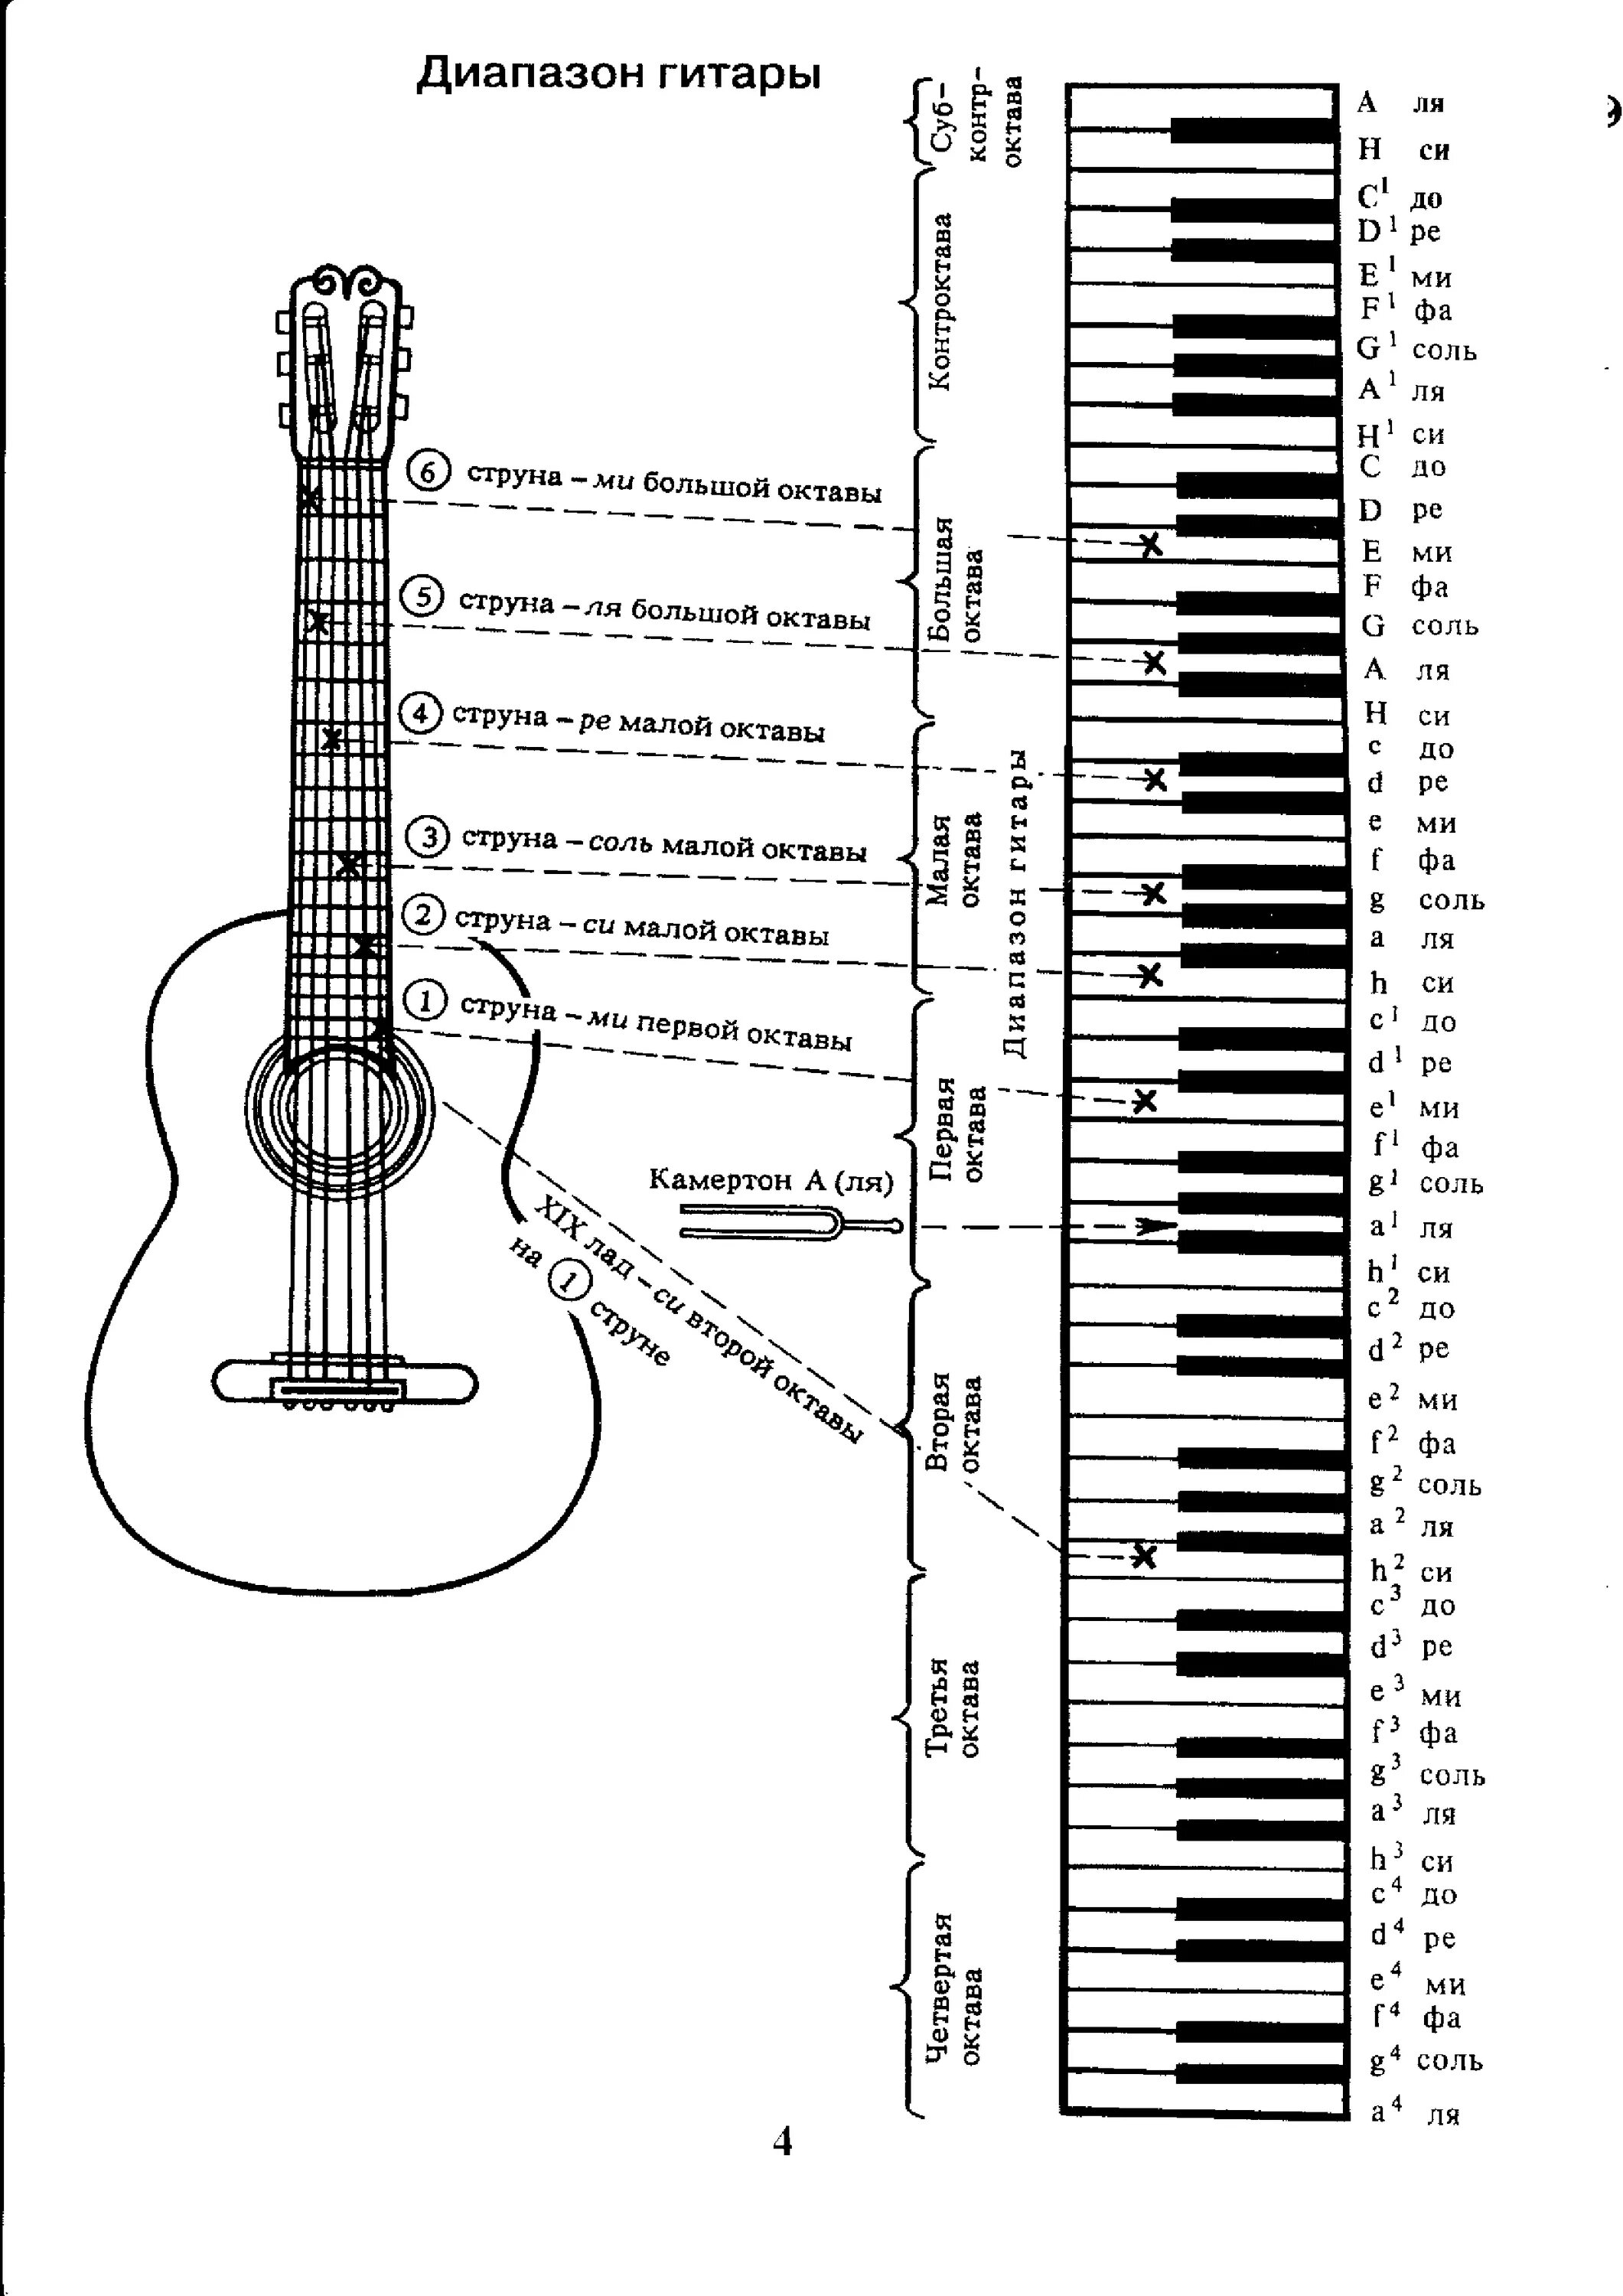 Аппликатура аккордов для гитары 6 струн для начинающих. Ноты на гитарном грифе 6 струнной. Лады на 6 струнной гитаре для начинающих. Схема гитары классической 6 струнной. Ноты семиструнной гитары